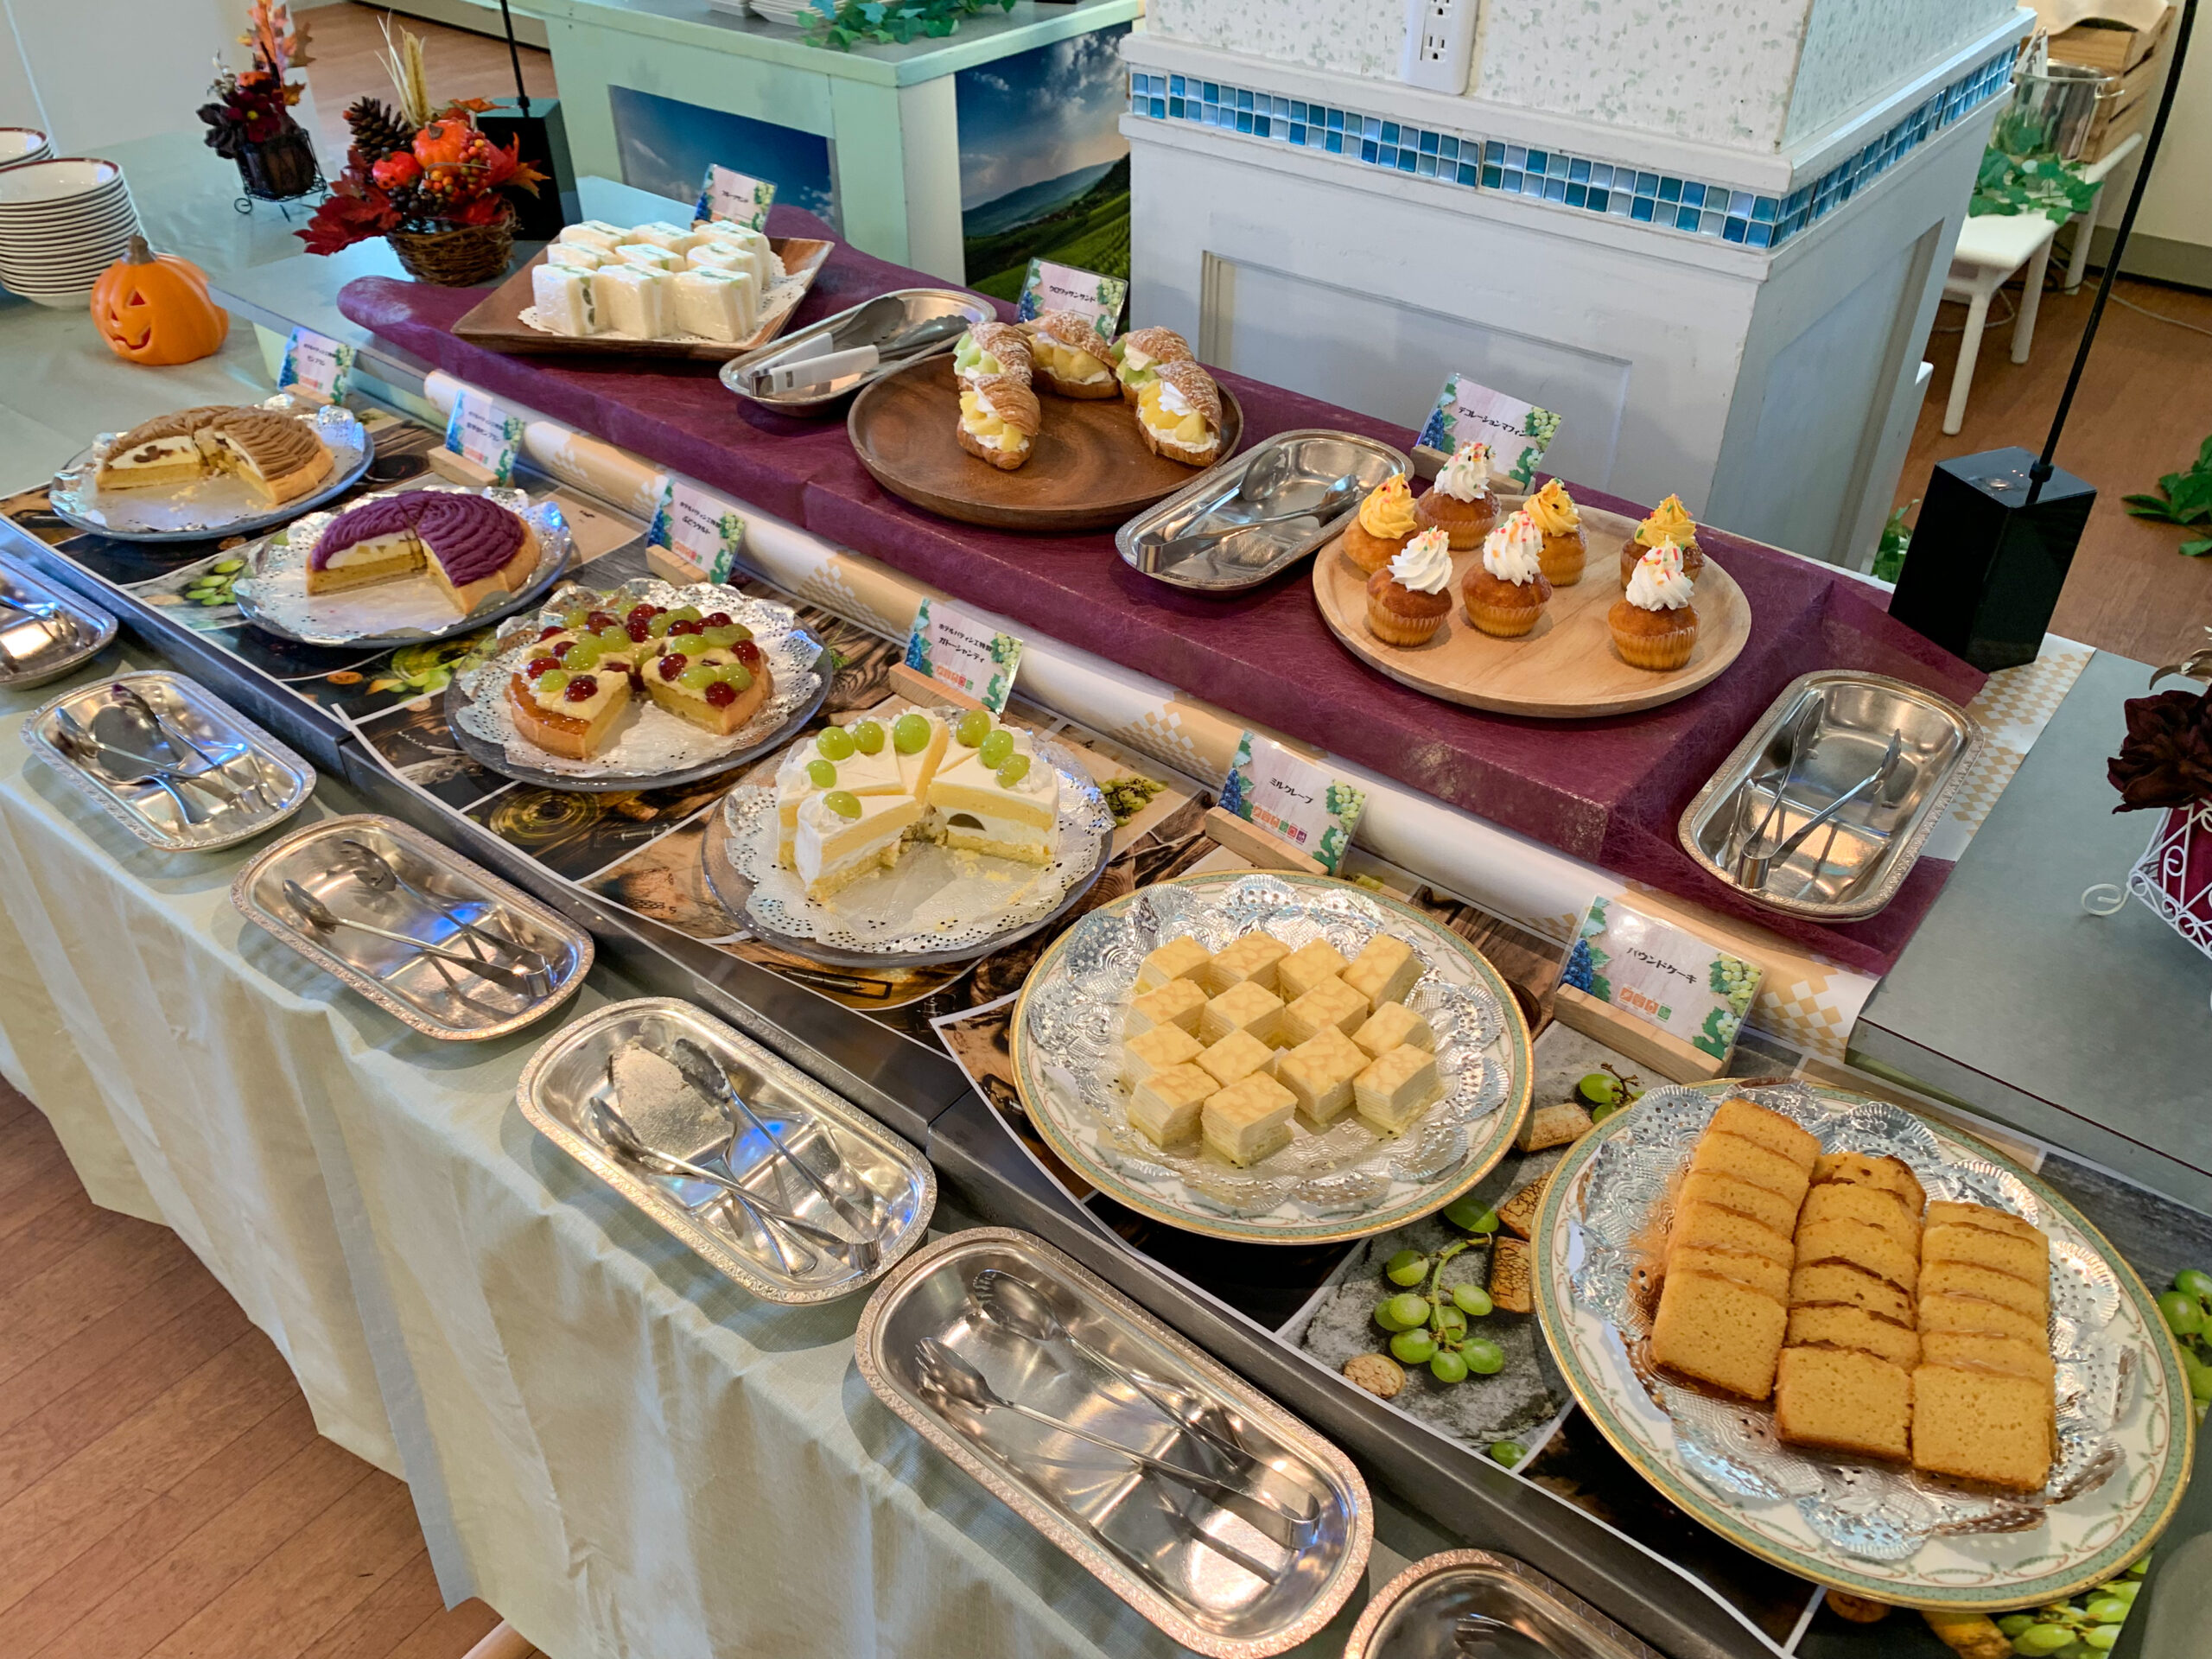 ハウステンボスのレストラン、トロティネの 『ぶどうとモンブランの食べ放題デザートランチブッフェ』の記事のアイキャッチ画像